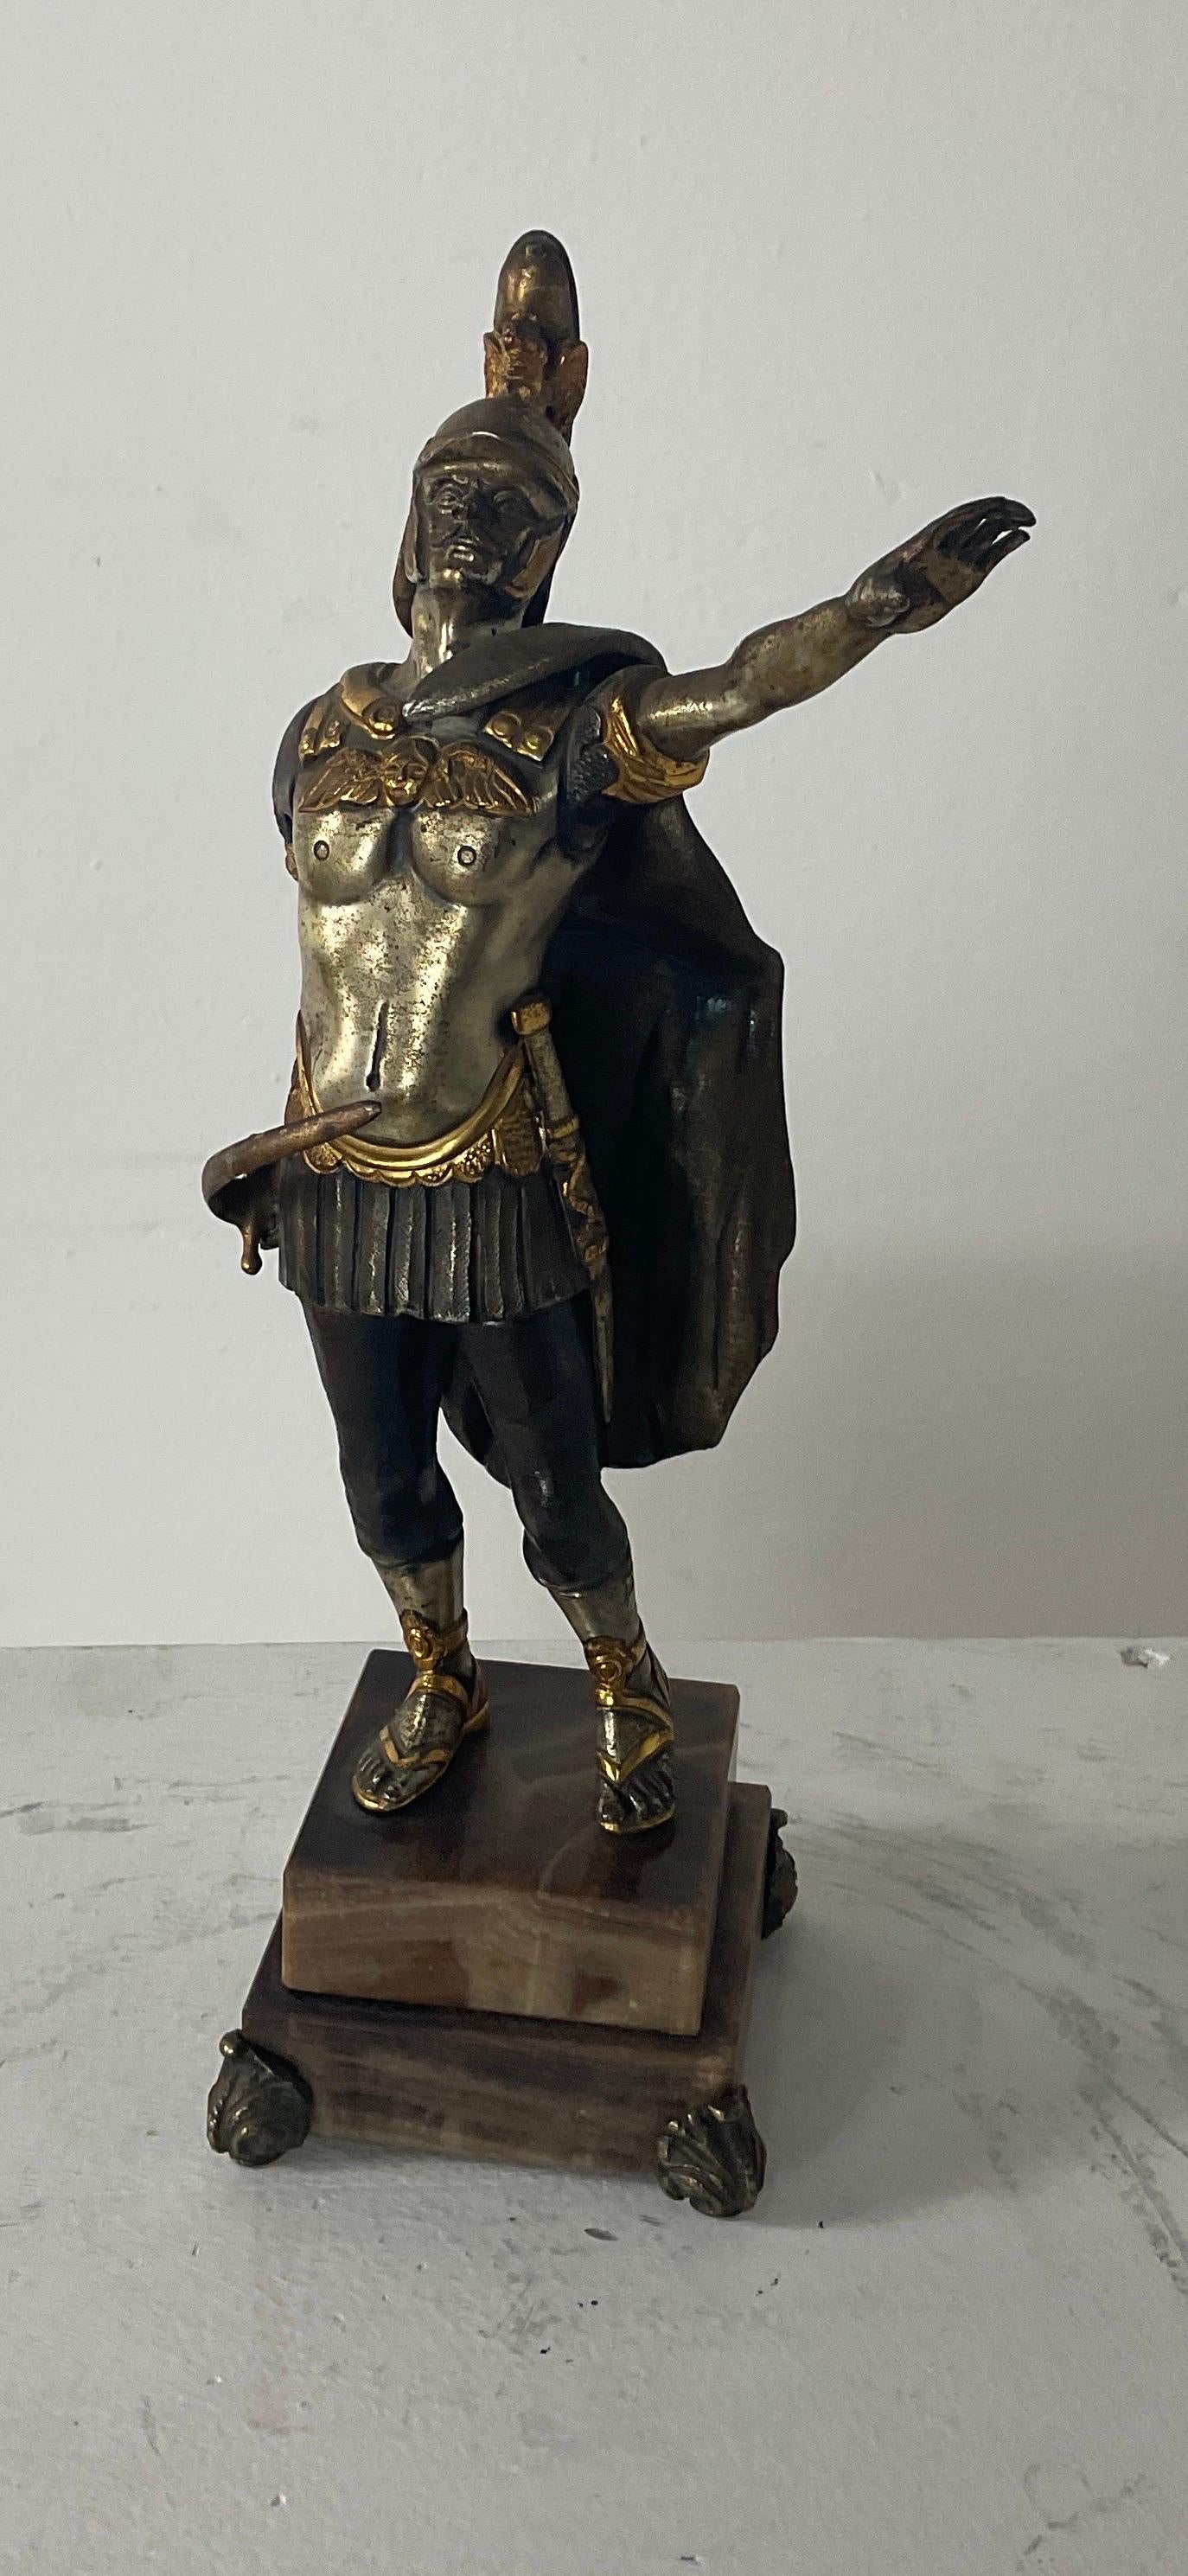 Die Figur eines römischen Generals in der militärischen Form der kaiserlichen Garde des 18. Jahrhunderts, geschaffen von dem anerkannten italienischen Meister Giuseppe Vasari (1934 - 2005) vermutlich in den siebziger Jahren. Auf der Rückseite